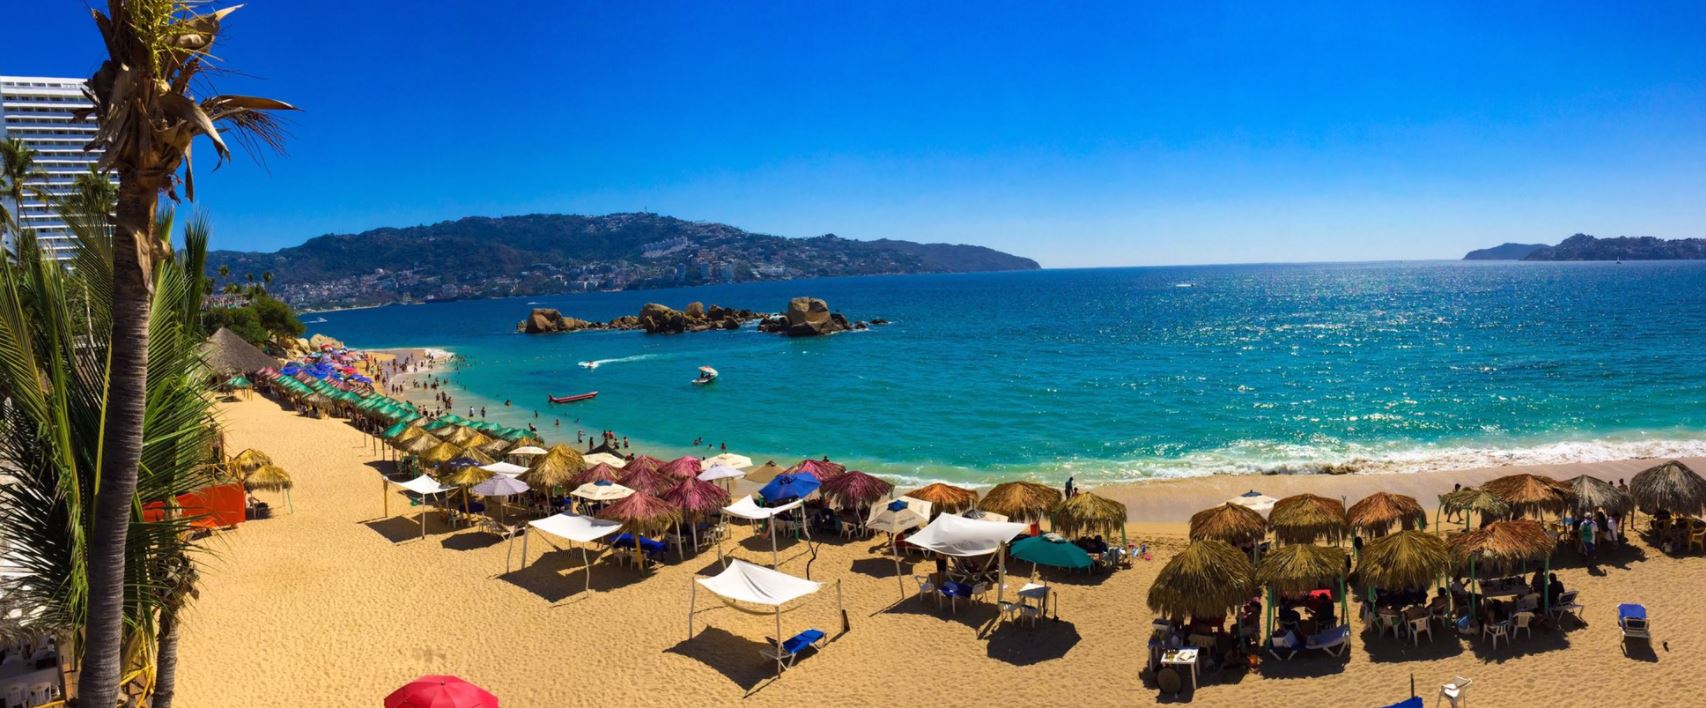 Acapulco, Vacaciones, Hoteles, Turismo, Noticias, Noticieros